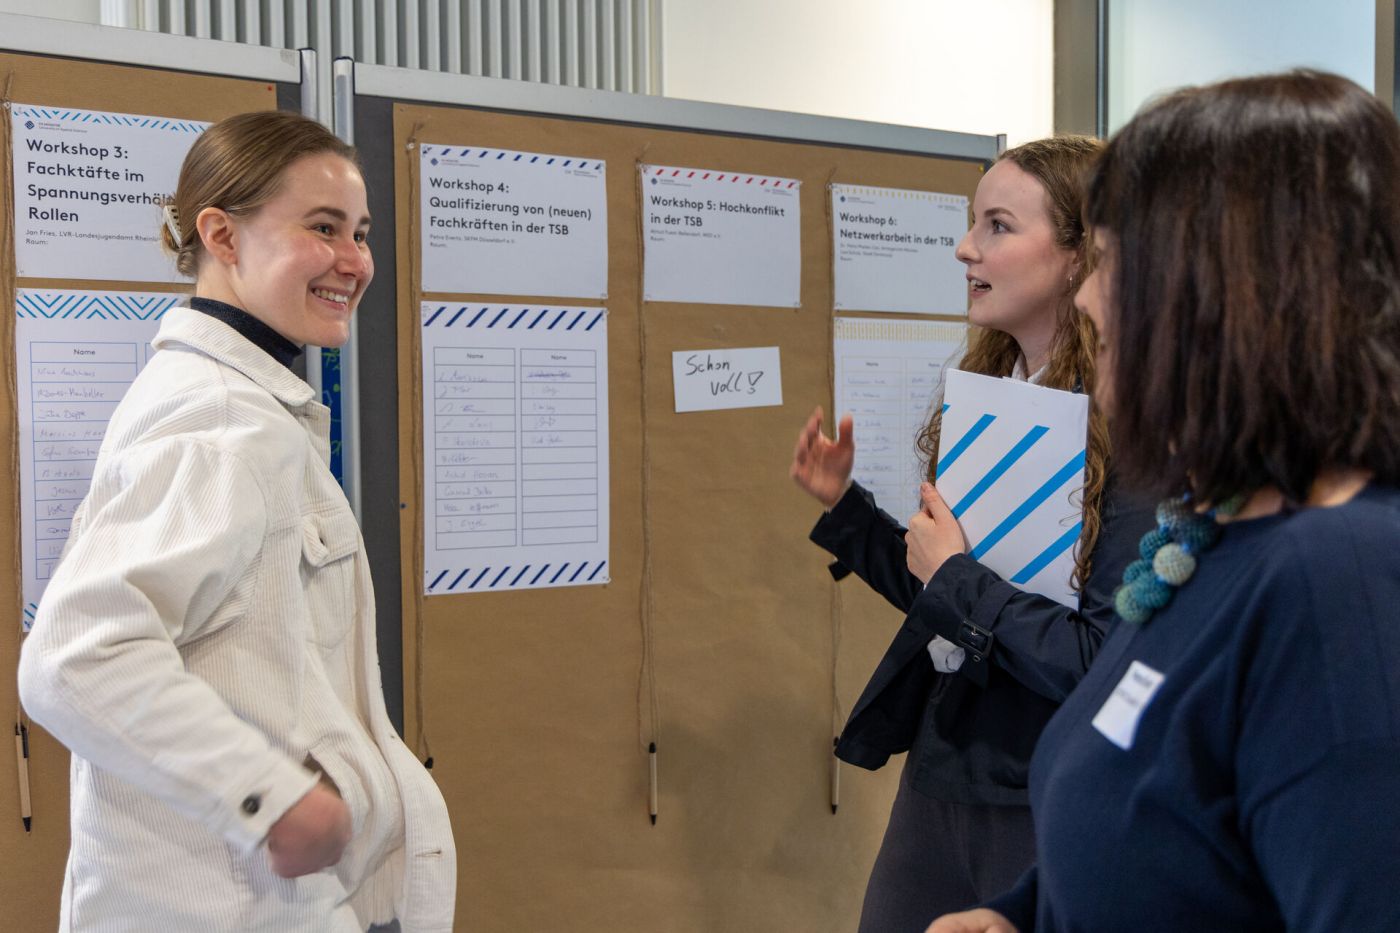 Teilnehmer*innen des Fachtags stehen vor einer Pinnwand und tragen sich eine Liste ein (Foto: FH Münster/Anna Thelen)